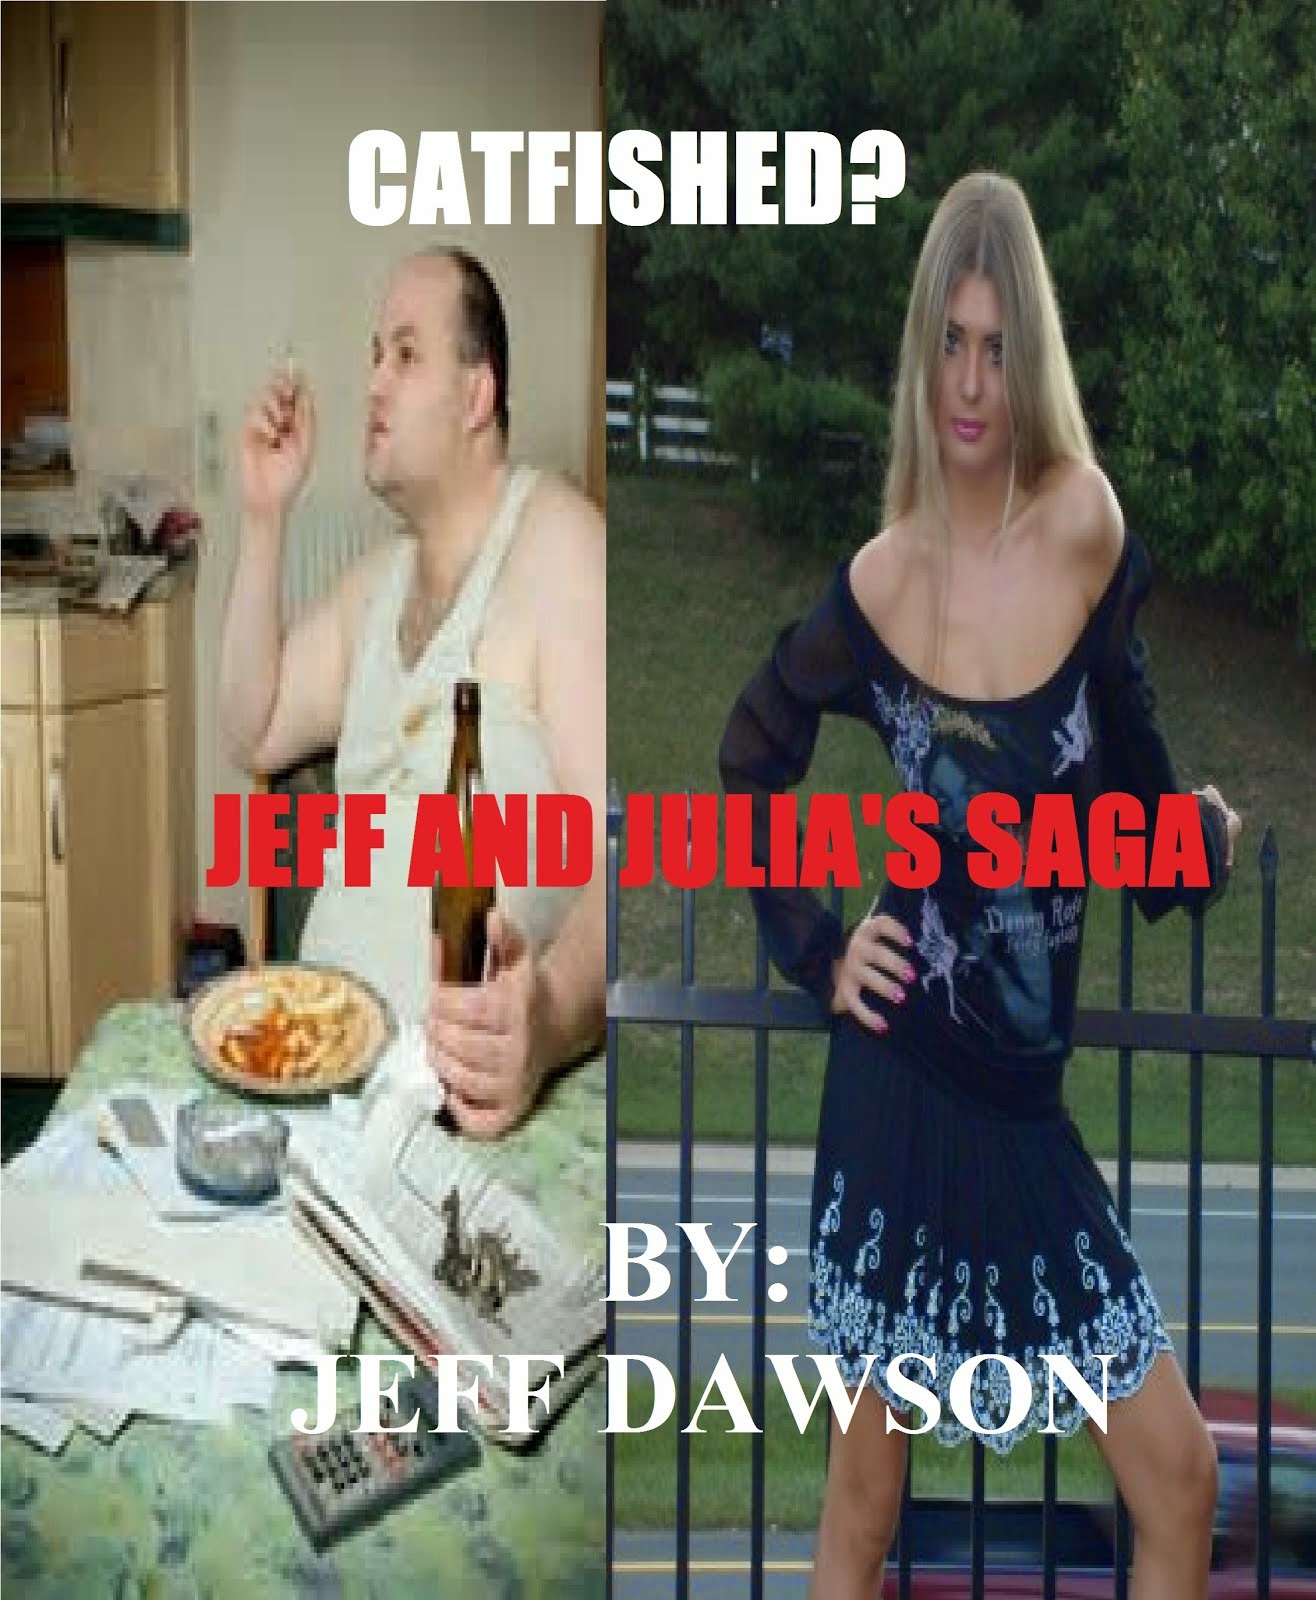 Catfished? Jeff and Julia's Saga